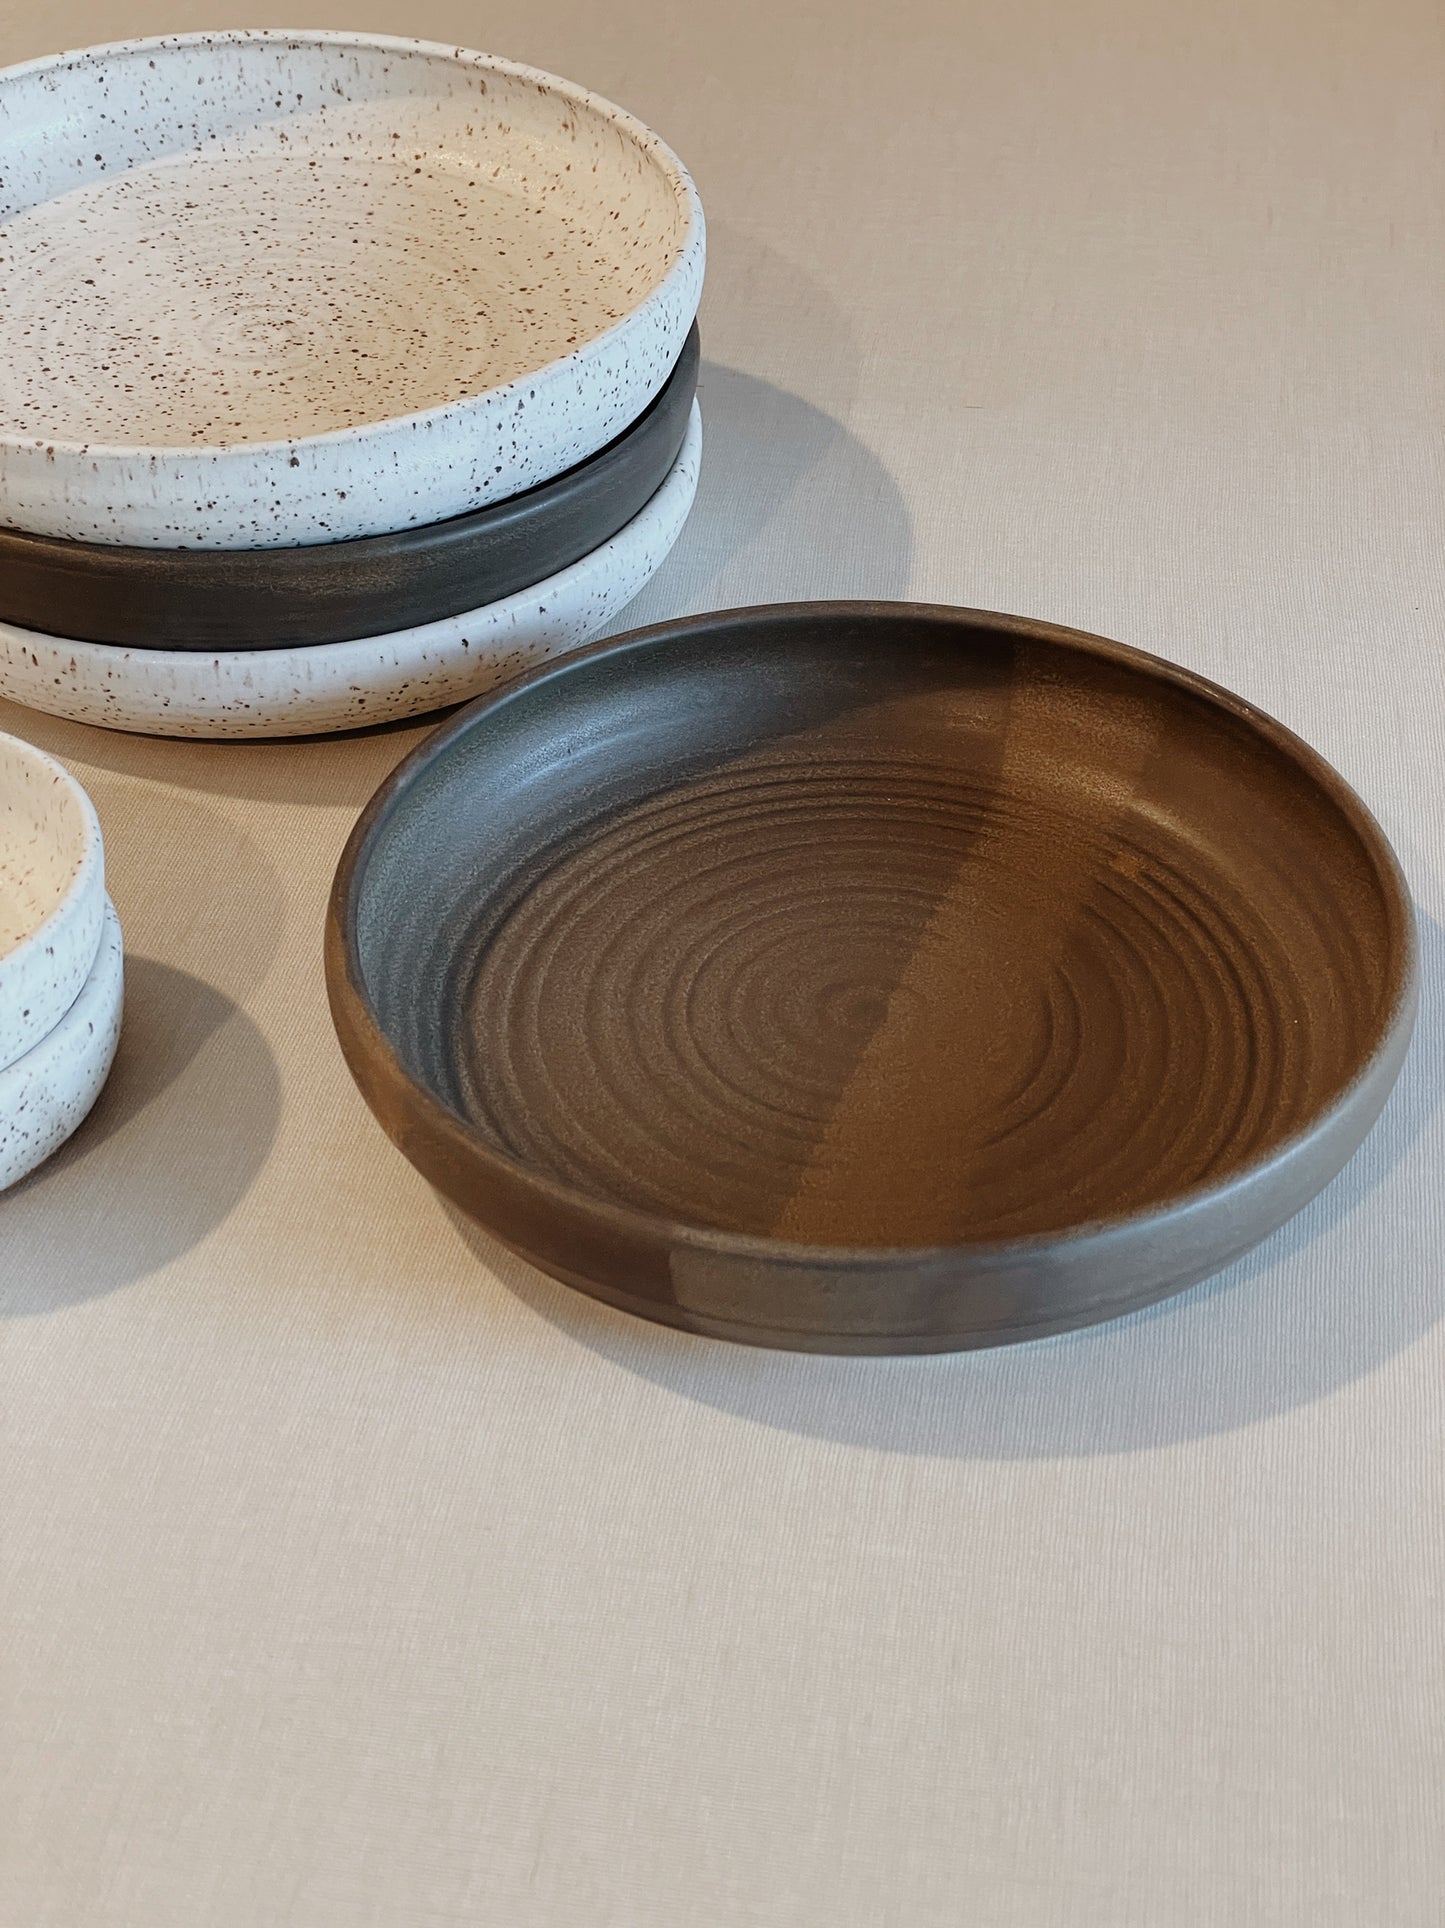 Ceramic Dinner Plate